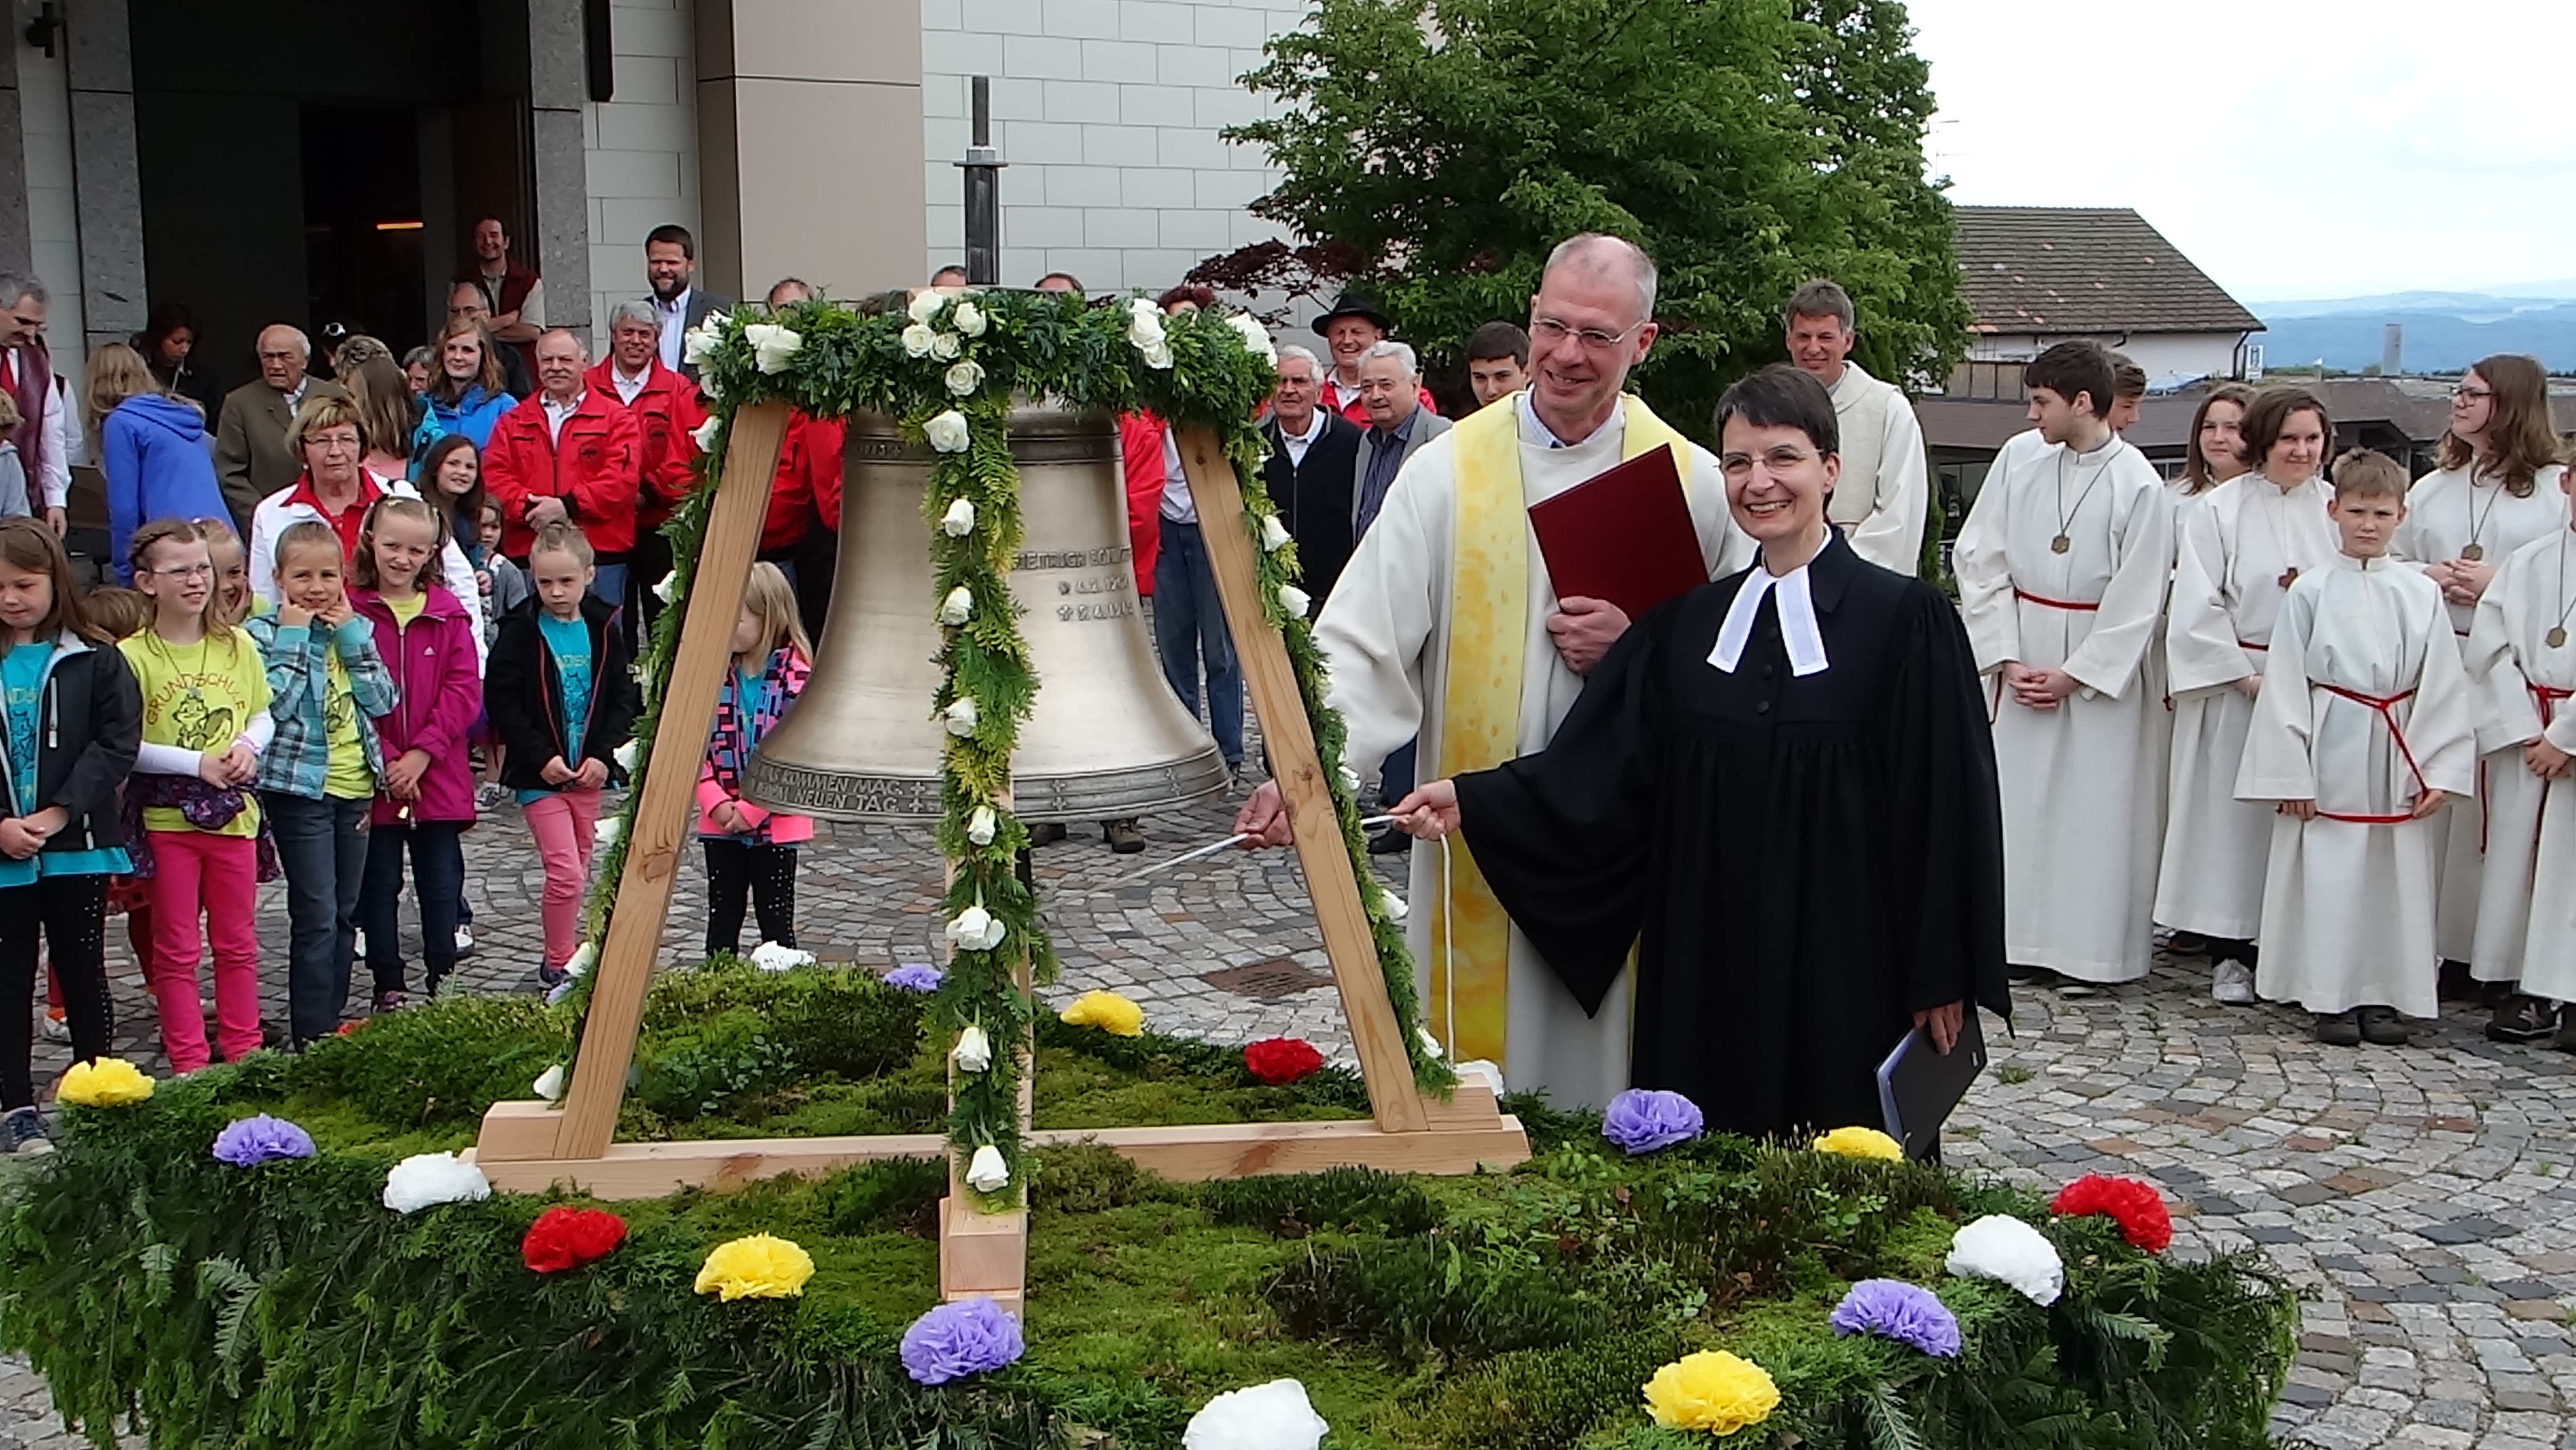 Pfarrer Stahlberger und Pfarrerin Moser läuten gemeinsam die Dietrich-Bonhoeffer-Glocke auf dem Görwihler Kirchenvorplatz